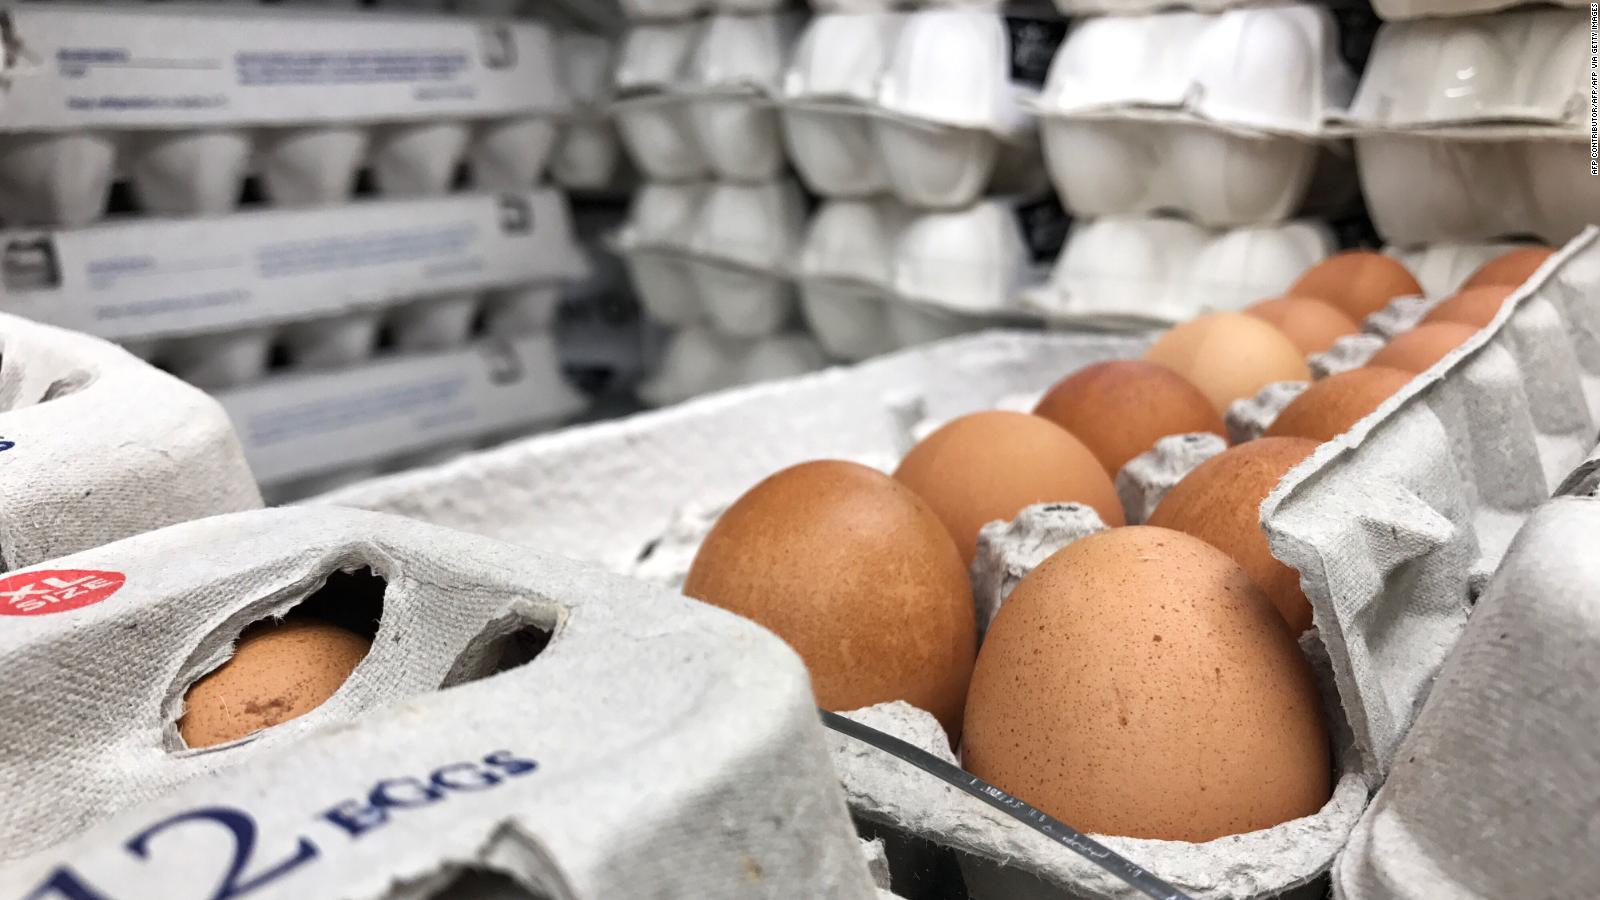 La gripe aviar provoca un aumento en el precio del desayuno para los estadounidenses